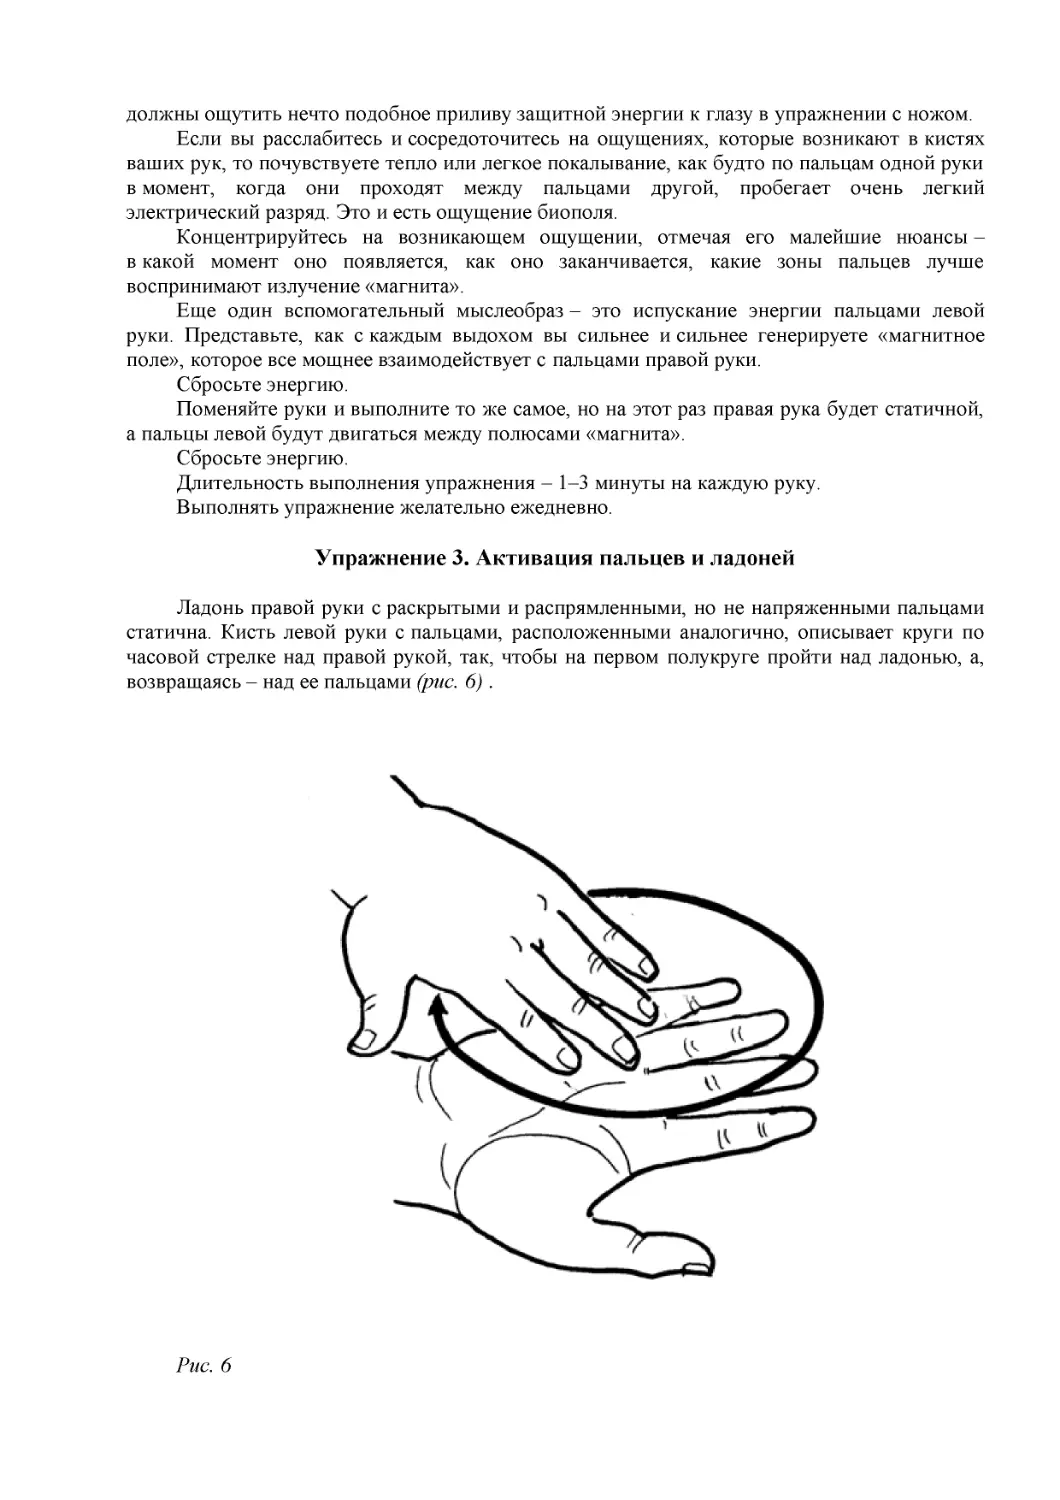 Упражнение 3. Активация пальцев и ладоней